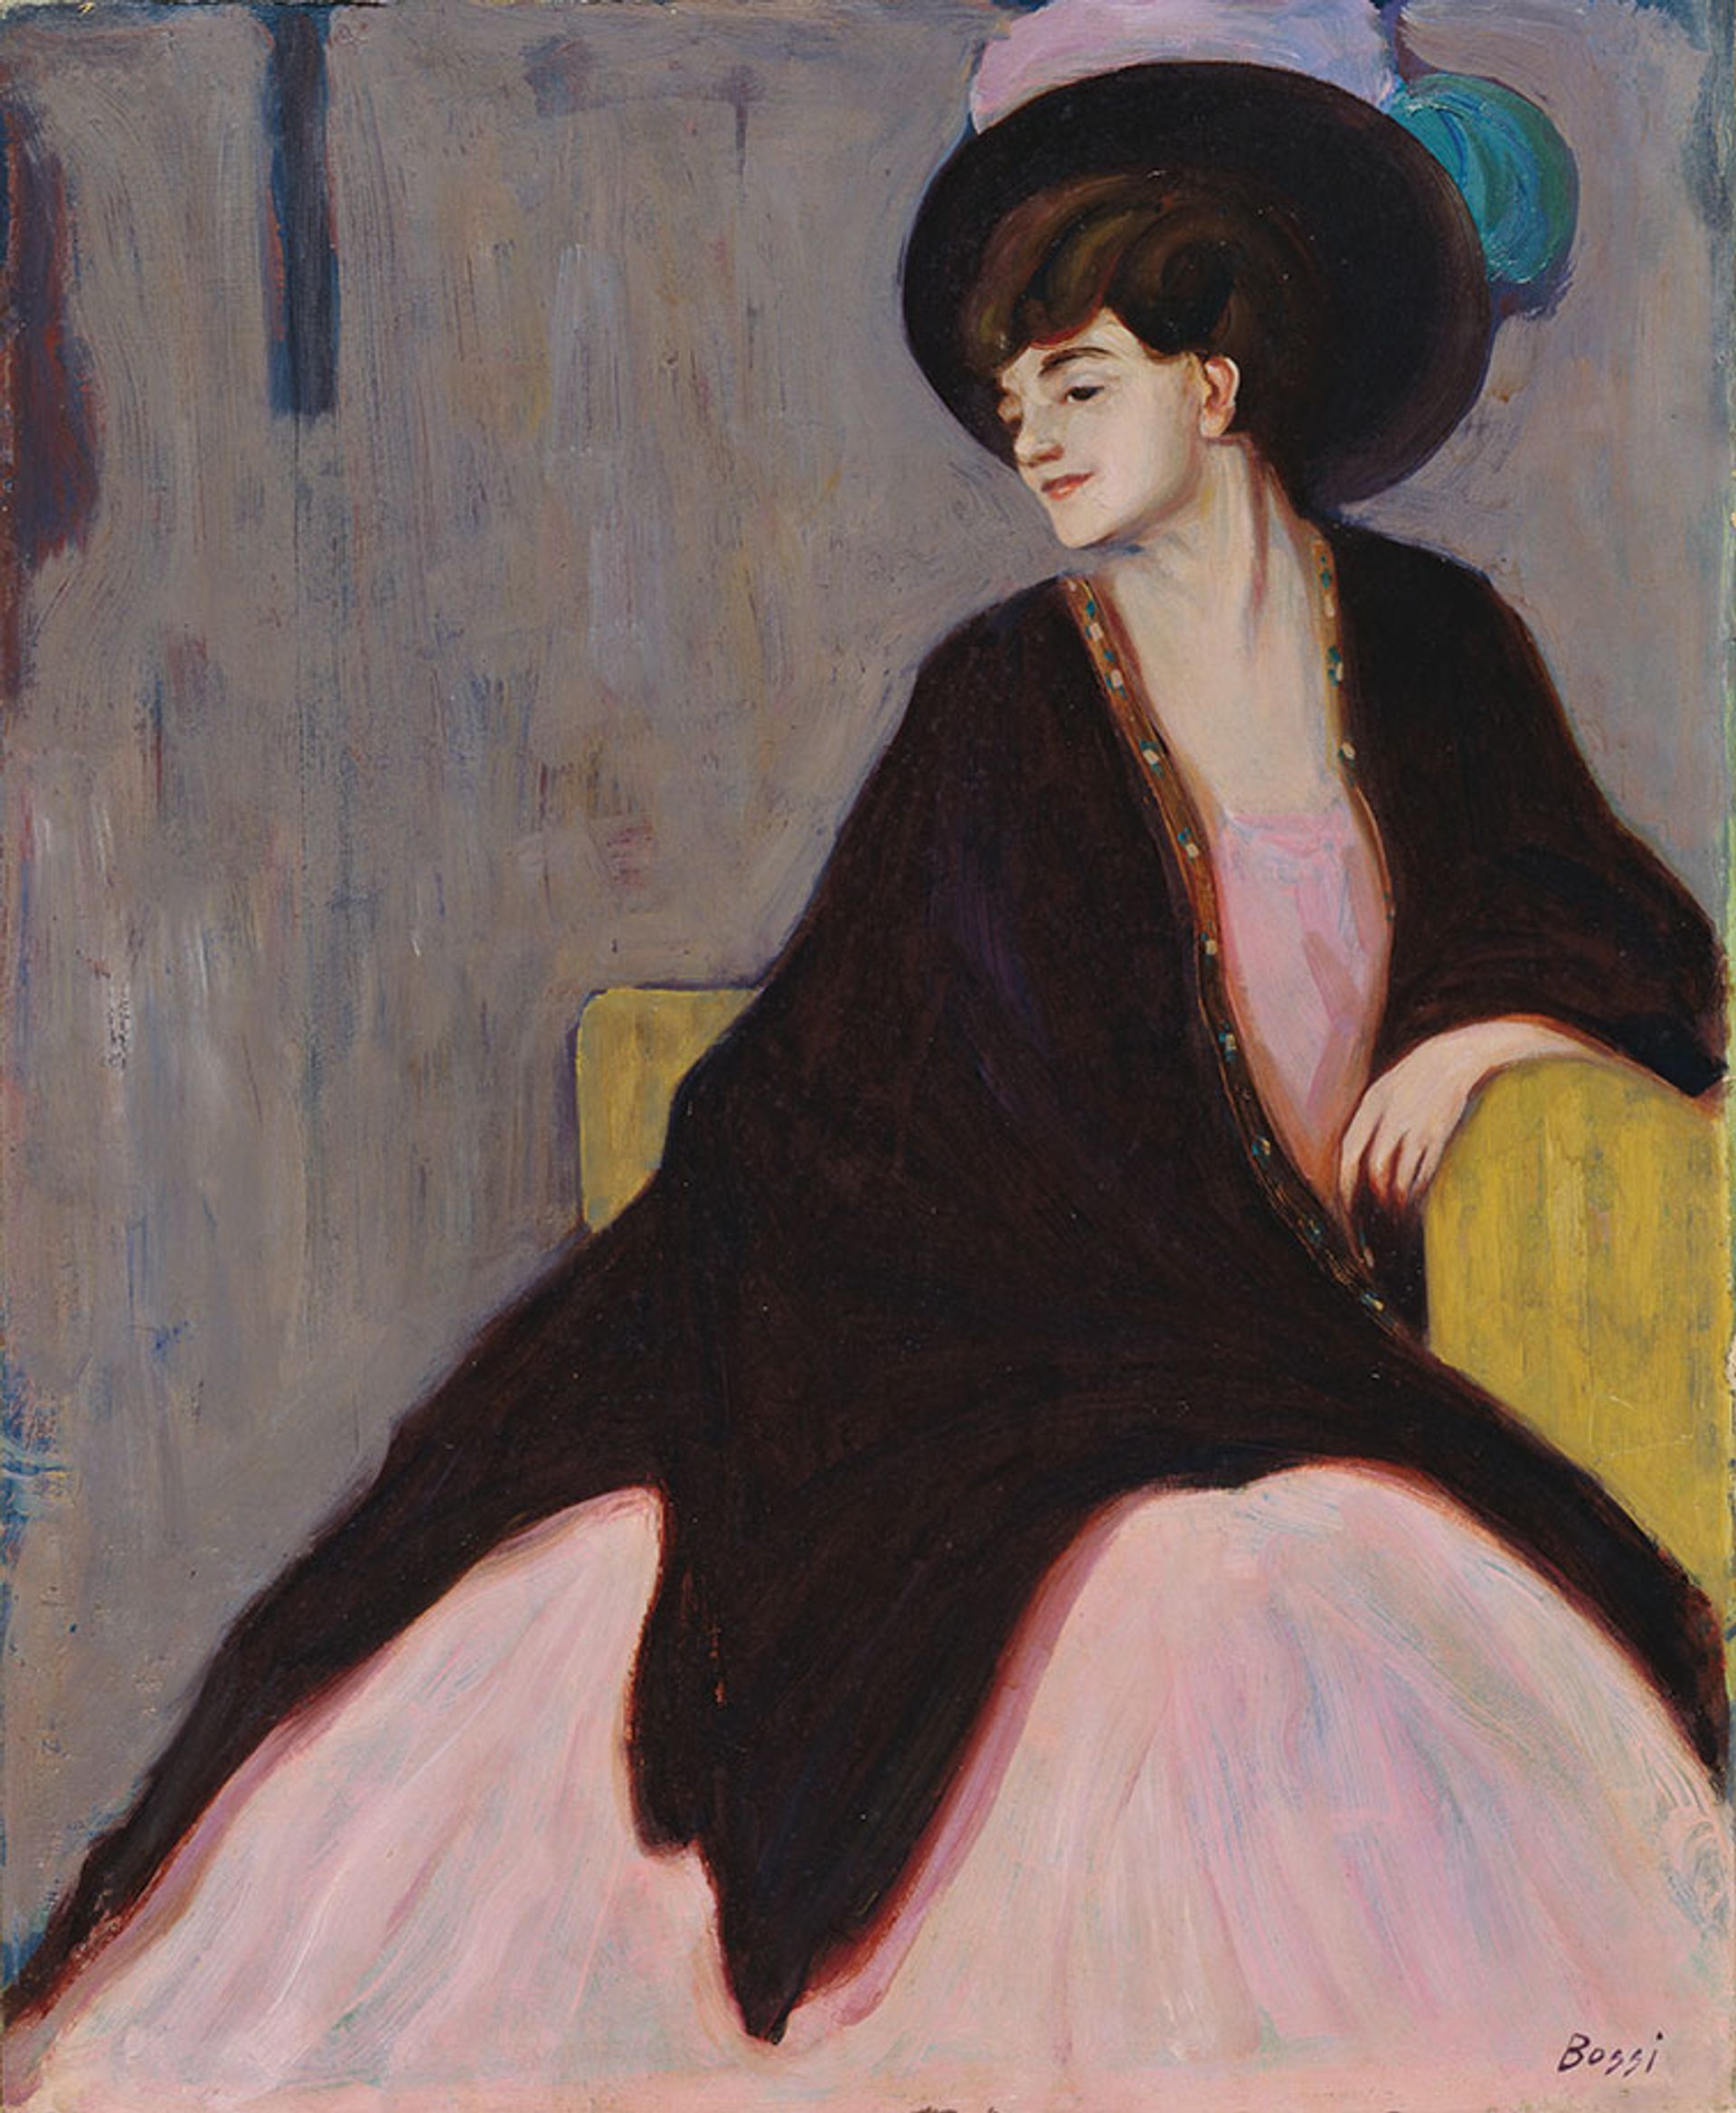 Erma Bossi’s Portrait of Marianne Werefkin (around 1910); Werefkin helped establish Der Blaue Reiter © The Estate of Erma Bossi